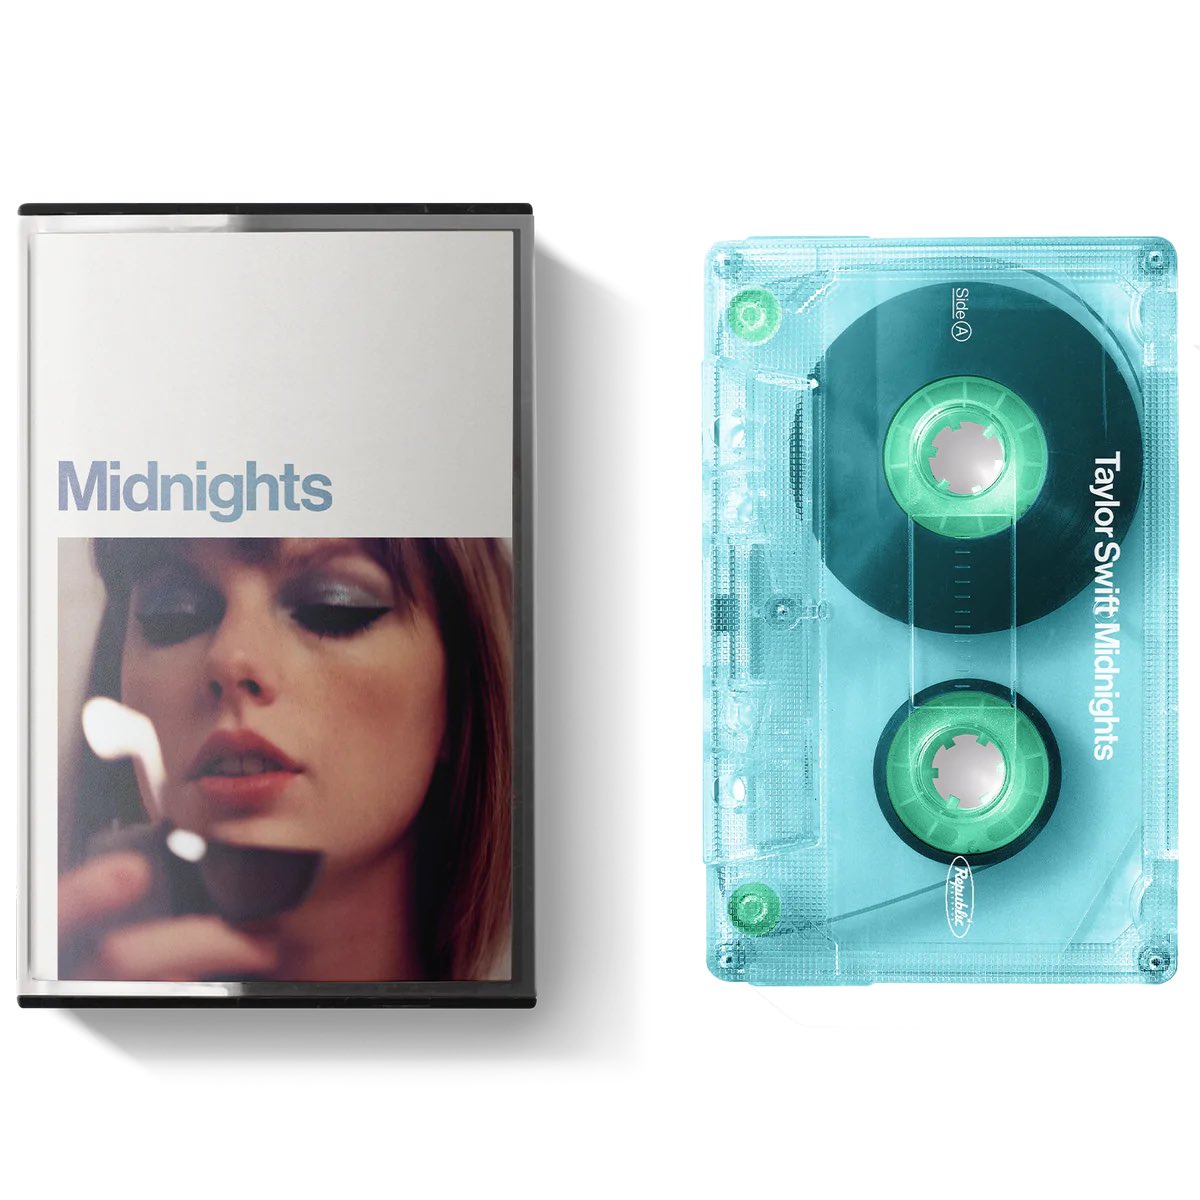 ตอนนี้หน้าช็อปเว็บเทย์เปิดให้พรีอัลบั้ม #Midnights แล้ว สีแผ่นไวนิลกับเทปสวยมากกกกก 💙🪔🕯️🔥 #taylorswift #MeetMeAtMidnights